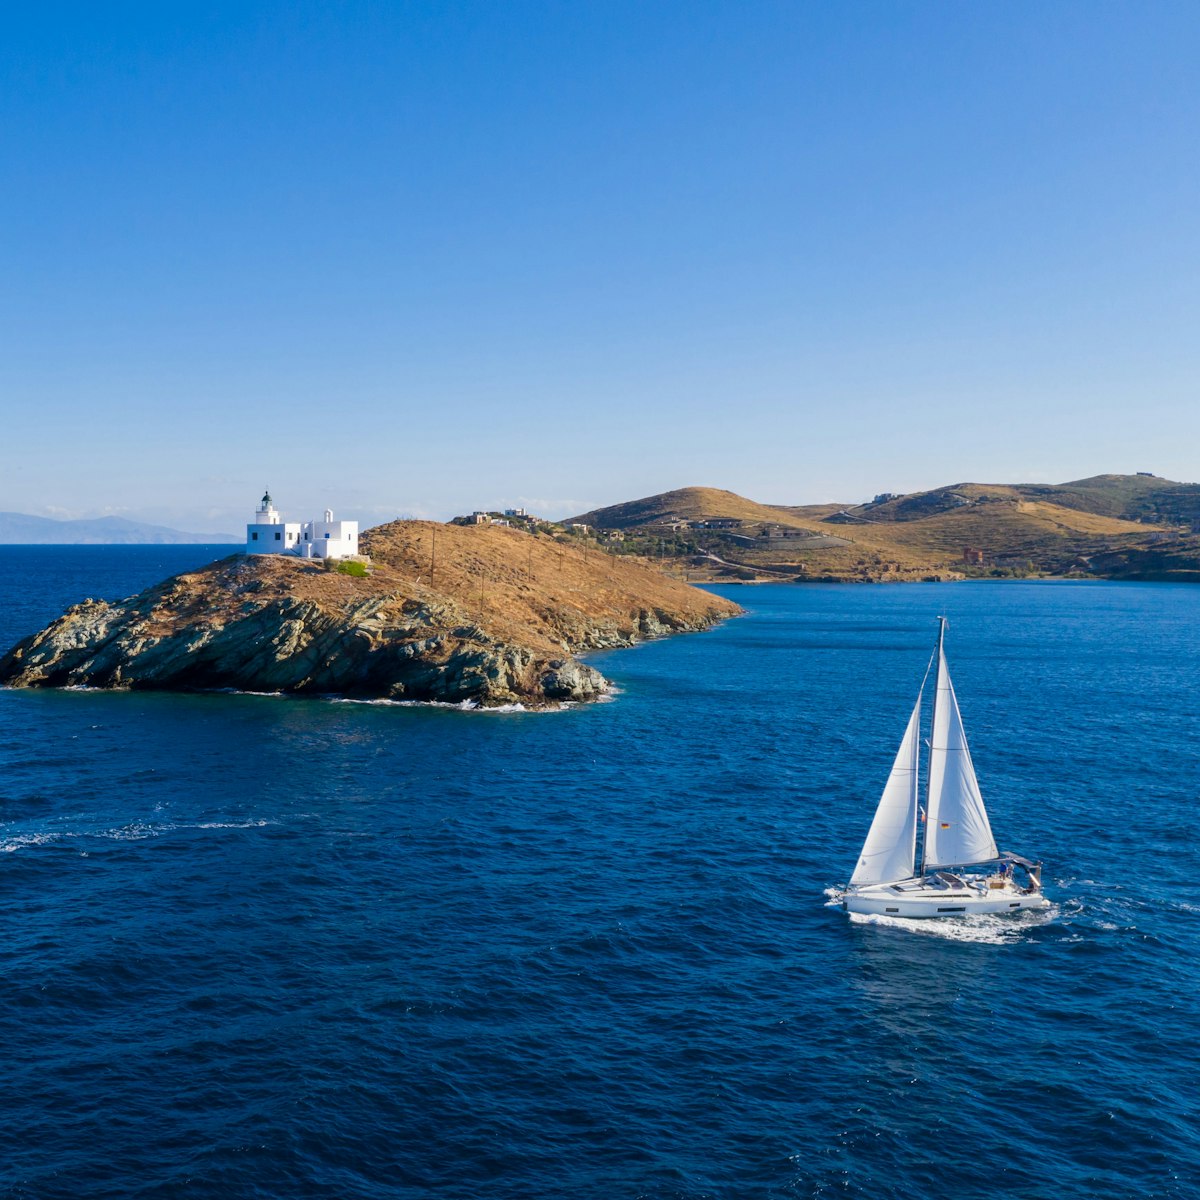 Sätt segel på ett äventyr och upptäck den oöverträffade skönheten hos några av de mest fängslande öarna i Egeiska och Joniska havet.